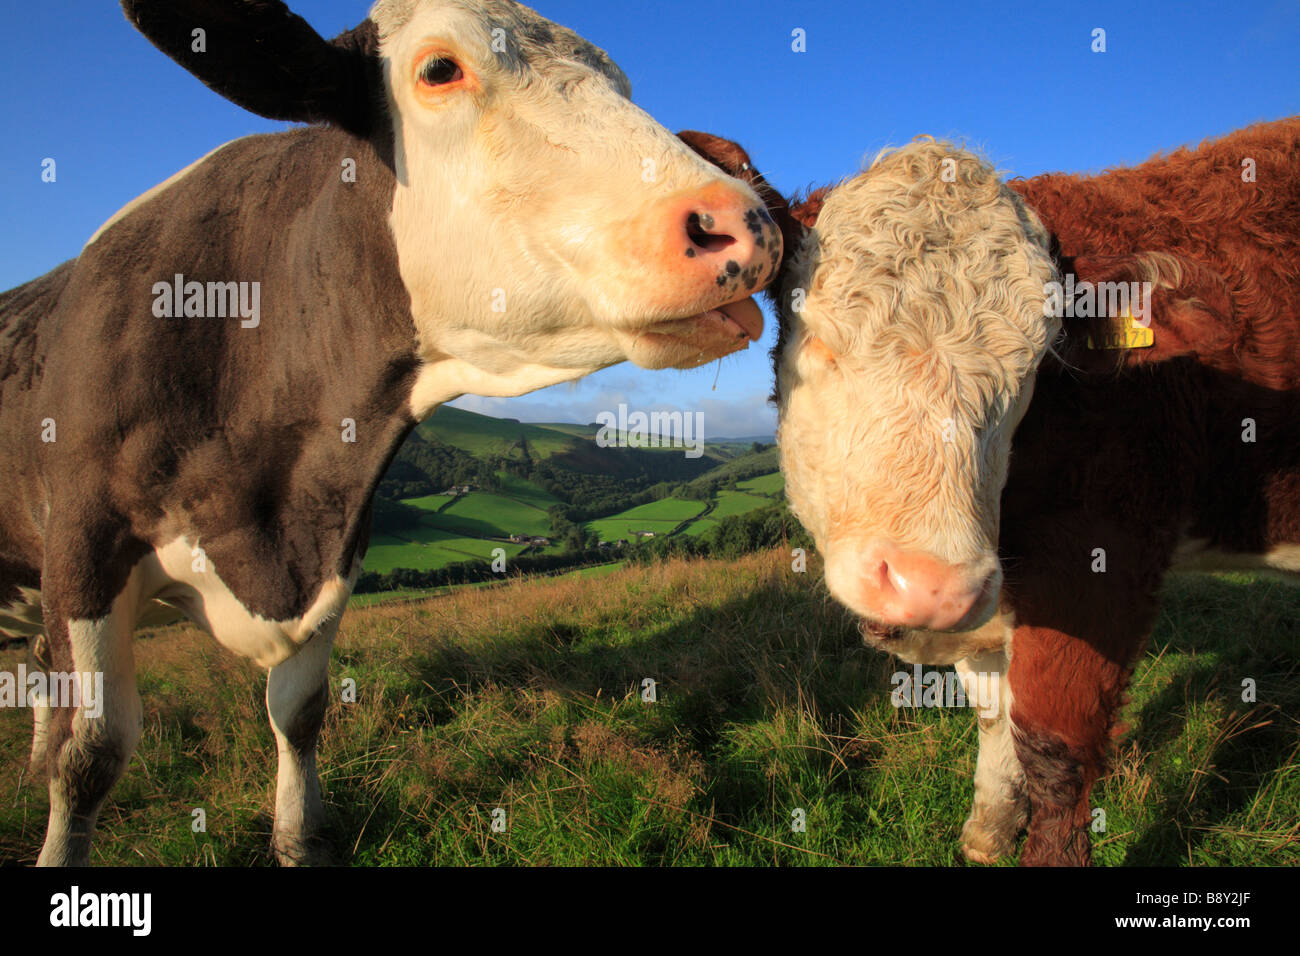 Vache Simmental léchant sa croix Hereford mollet. Sur une ferme biologique. Powys, Pays de Galles, Royaume-Uni. Banque D'Images